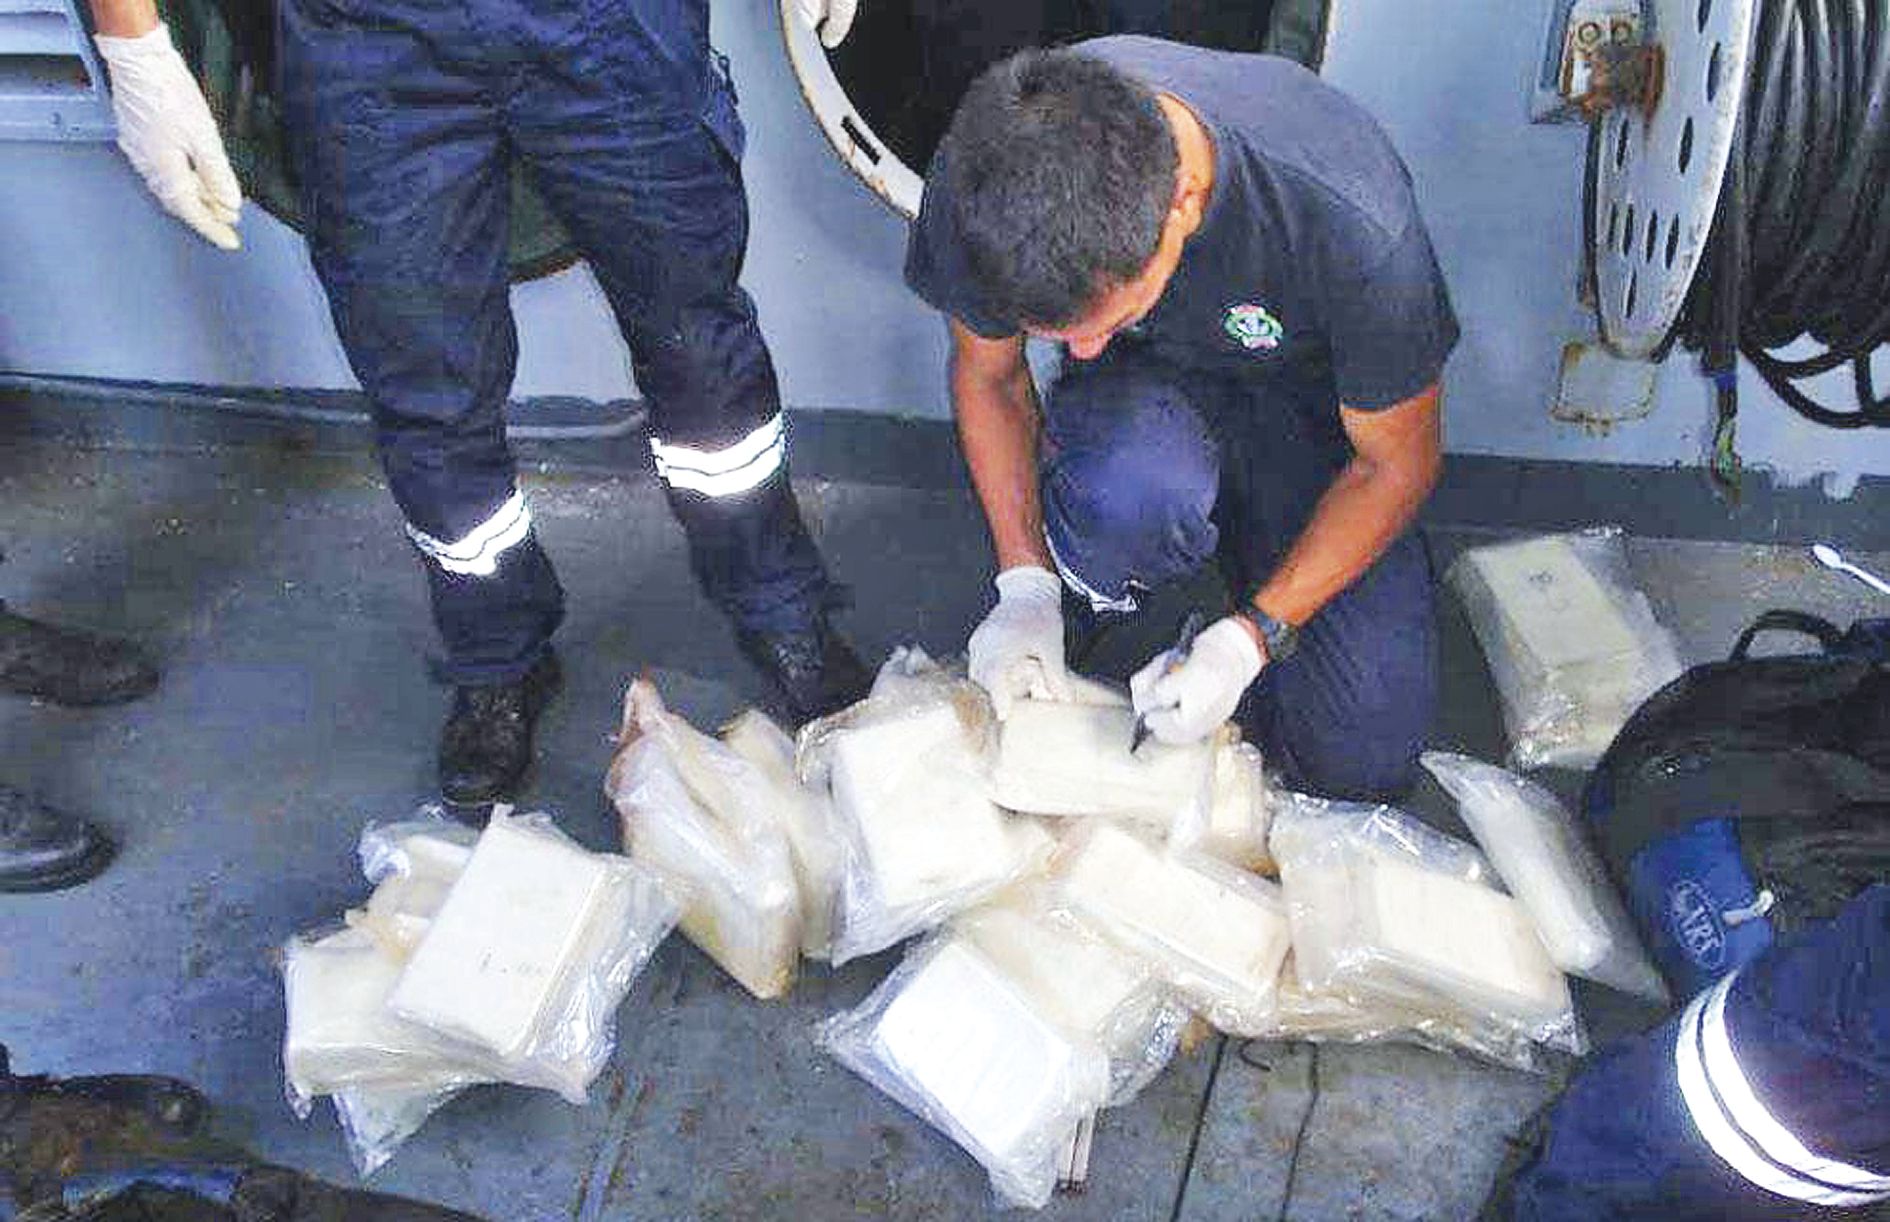 Des narcotrafiquants dans les eaux de Calédonie, c’est du déjà-vu. La marine avait déjà intercepté un voilier bourré de 200 kg de cocaïne « assez pure » en provenance du Pérou. Trois « mules » avaient été interpellées et envoyées à Paris.